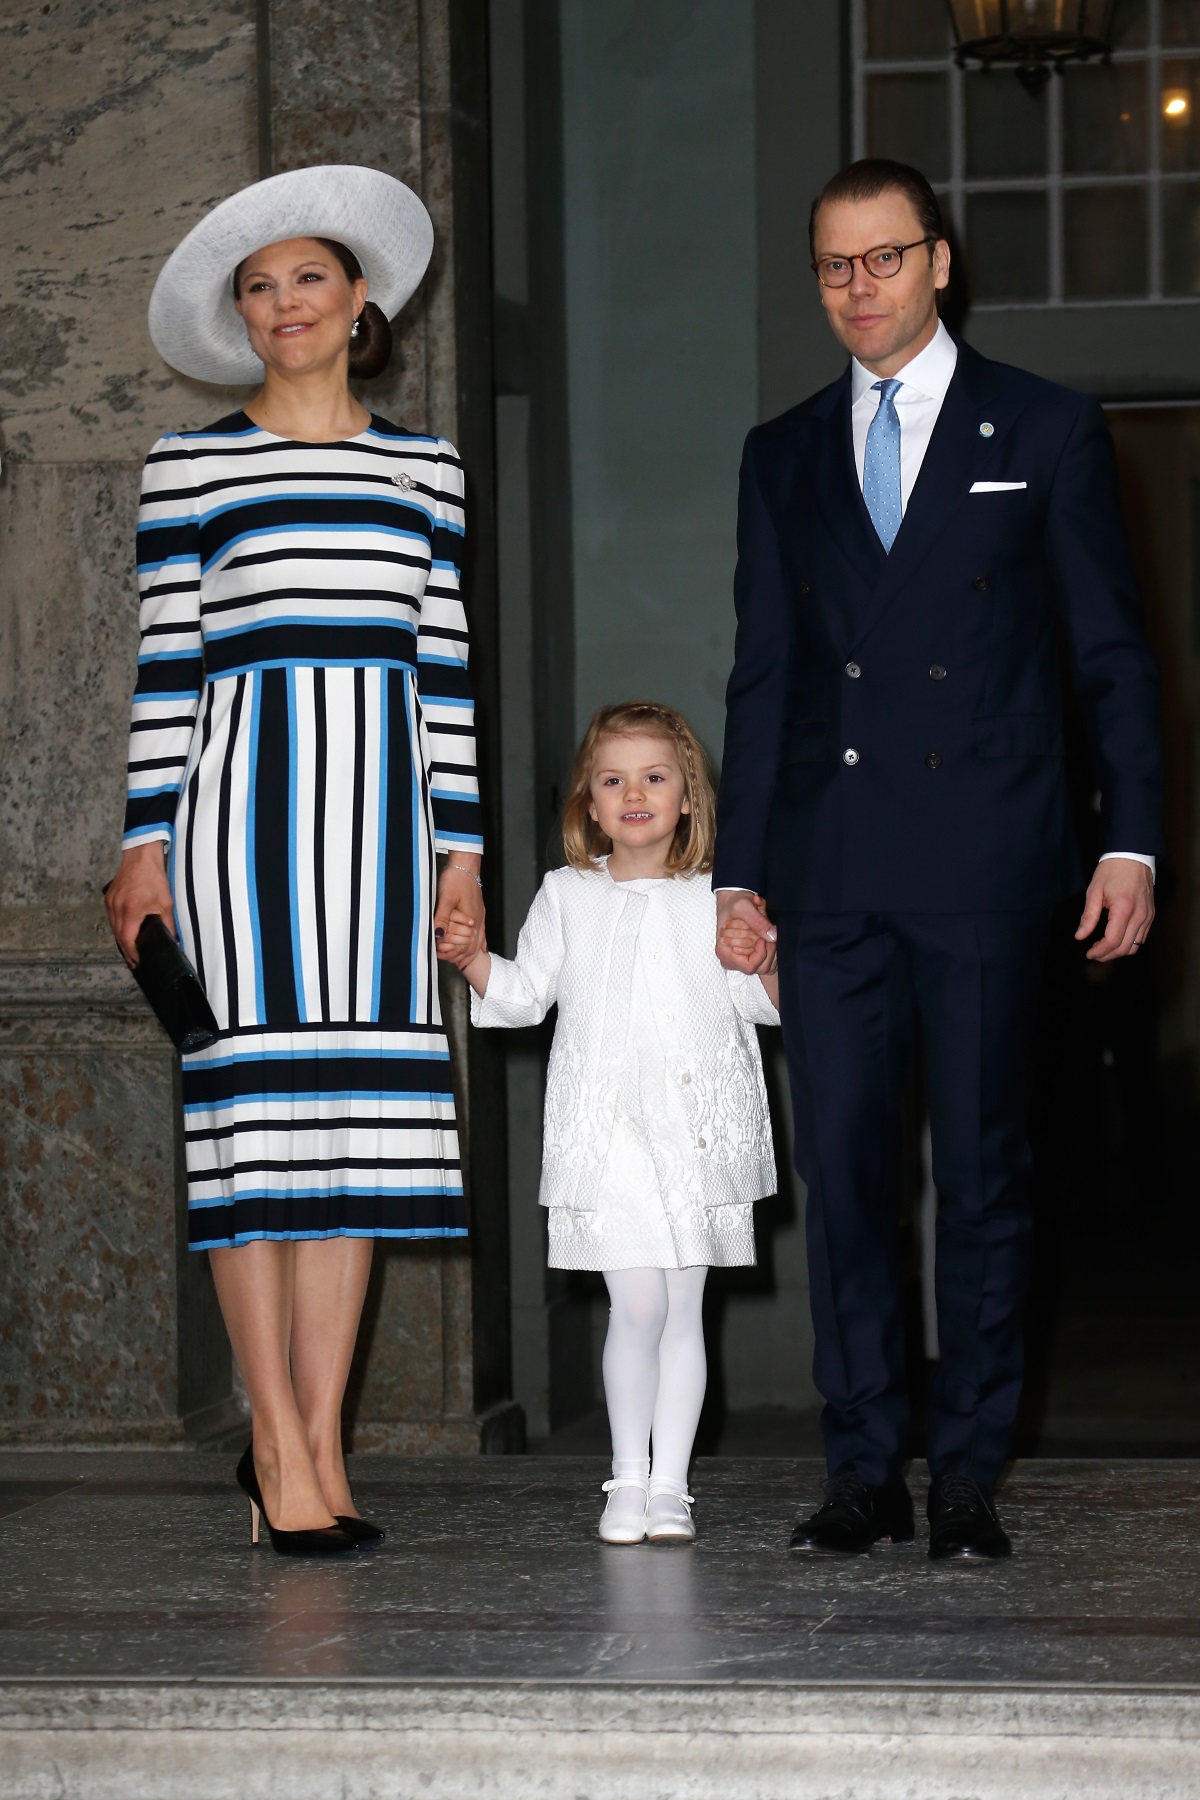 Шведската принцеса Виктория загърбва "правилата" в името на любовта. Тя среща бъдещия си съпруг - фитнес инструкторът Даниел, във фитнес зала в Стокхолм. Принцесата тренира там след като се възстановява от хранително разстройство. Двамата започват да се срещат, въпреки неодобрението на приятелите и близките си, в това число е и бащата на Виктория - крал Карл XVI Густаф. През 2010 г. двамата се женят, а сега са уважавани кралски особи.